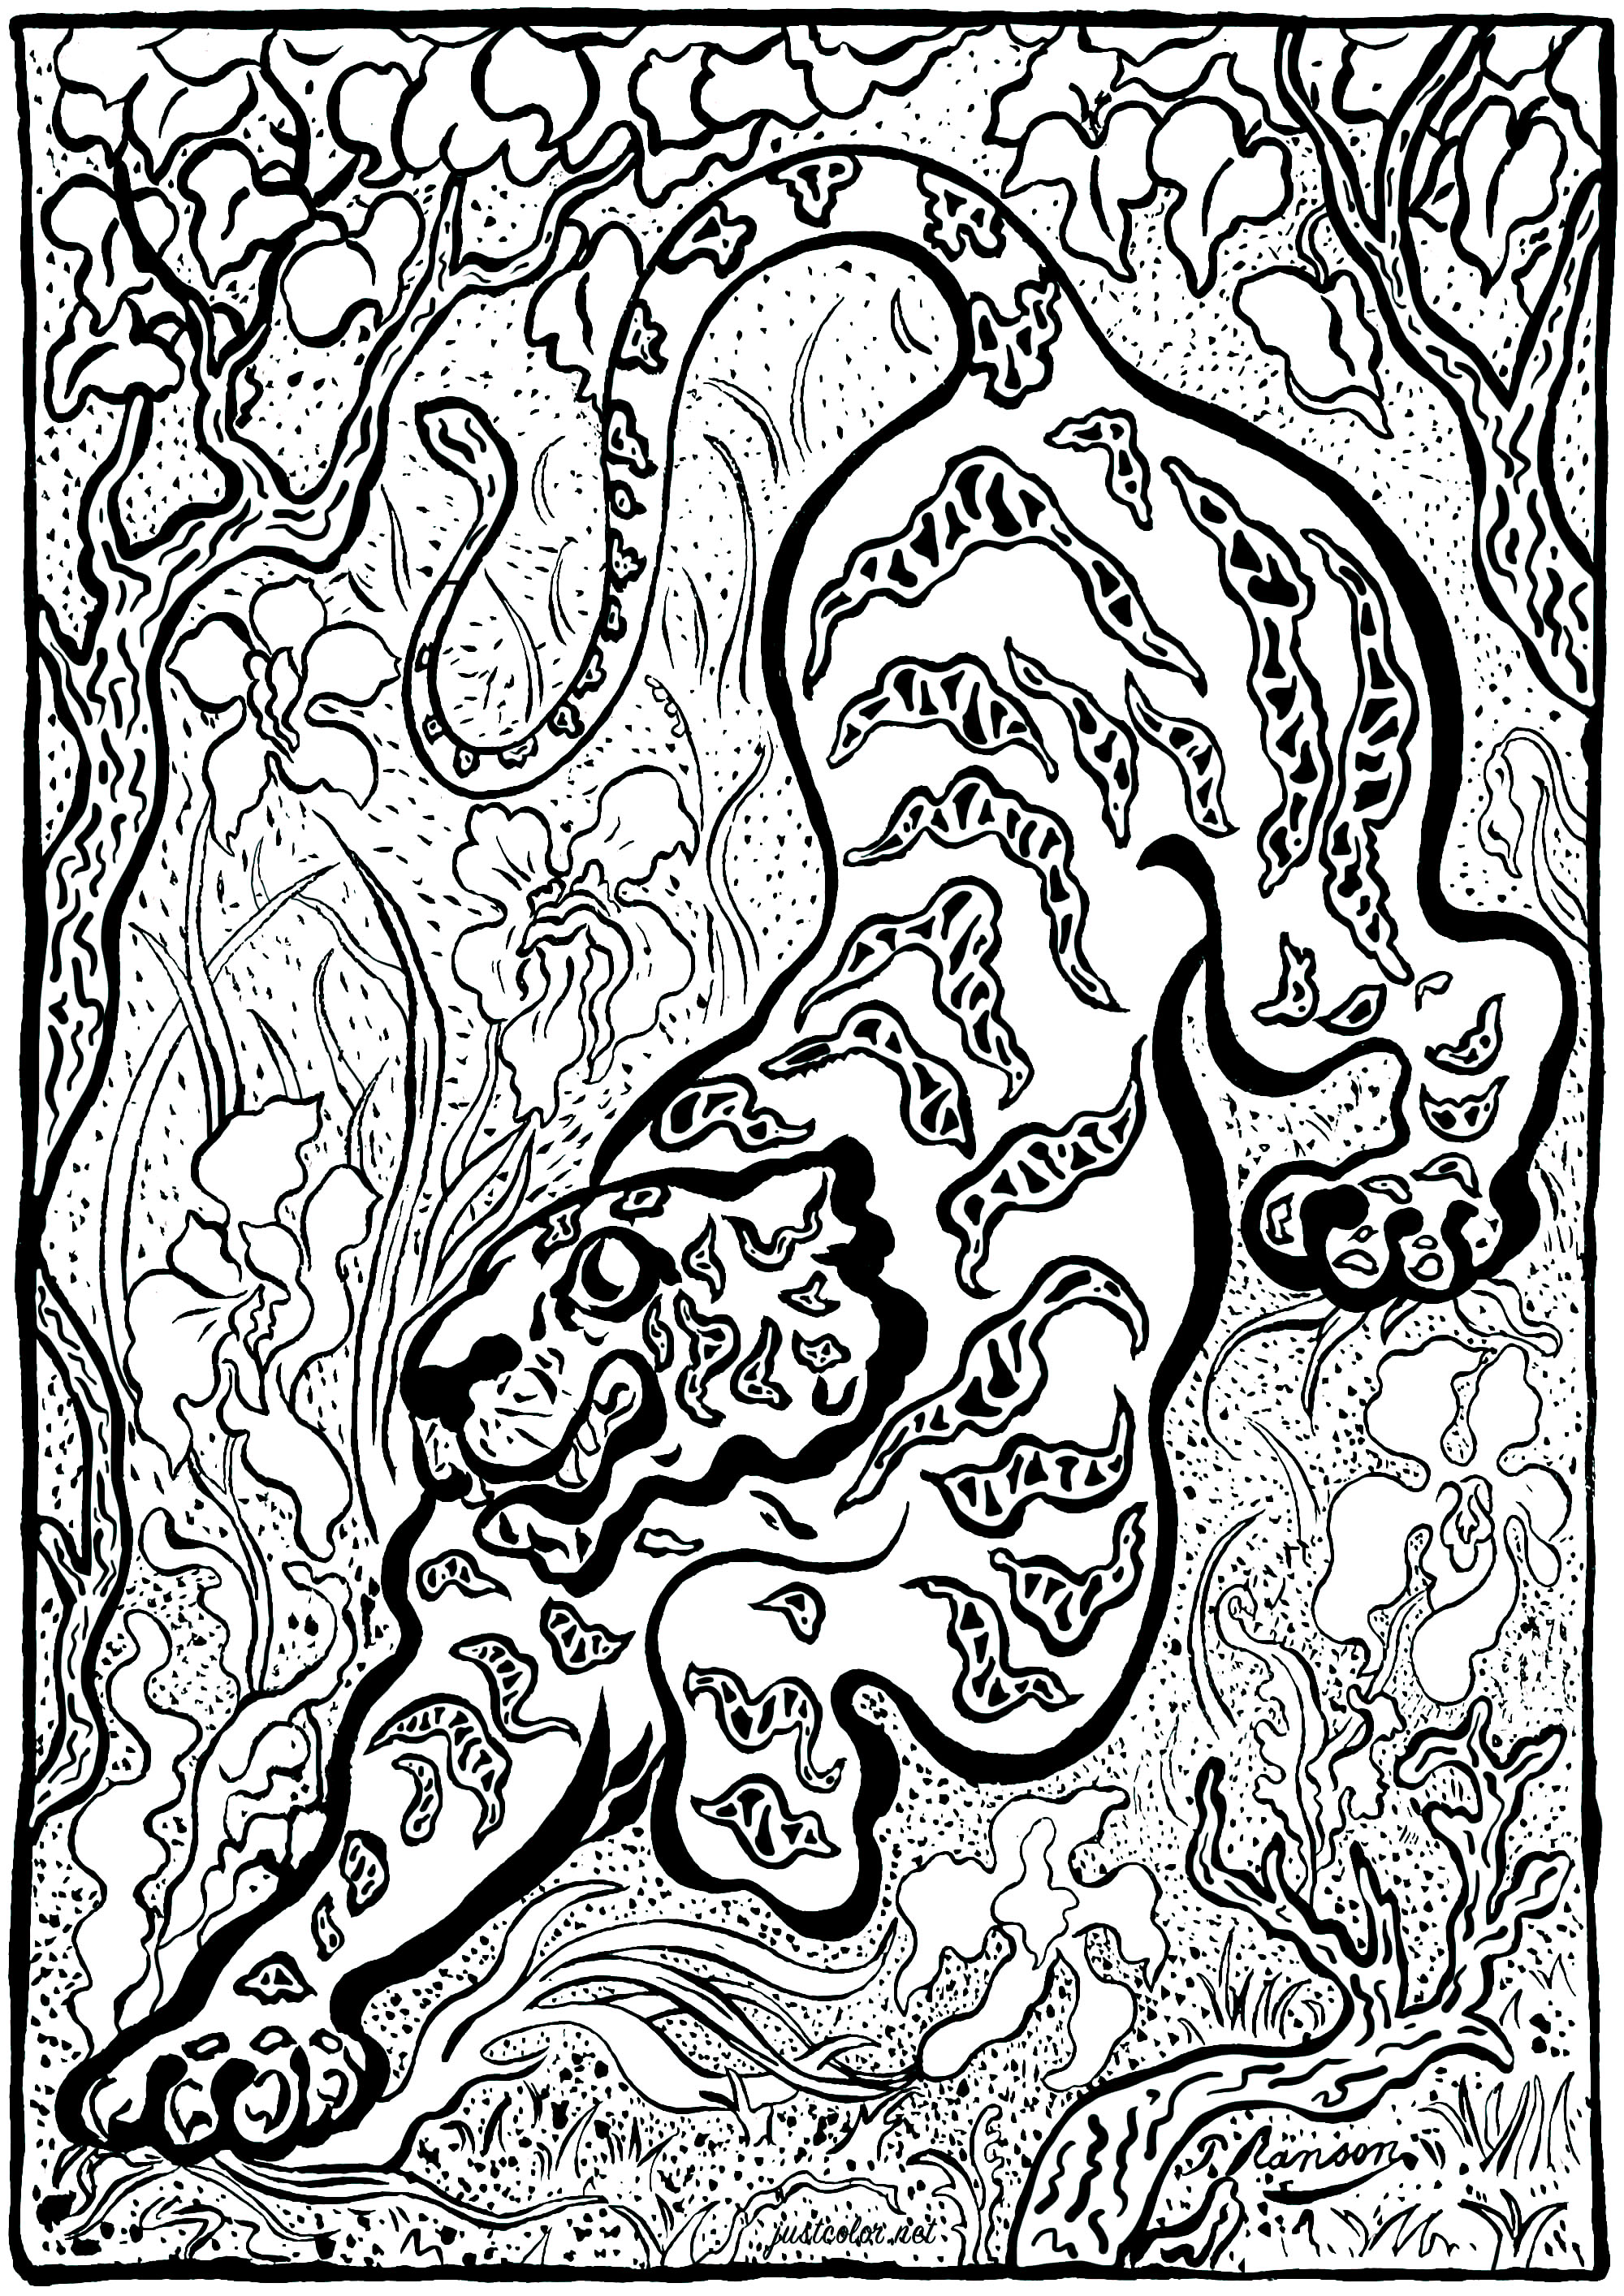 Colorazione basata su 'Tigre dans les jungles' di Paul-Élie Ranson (1883) - Versione 2 (complessa). Paul-Élie Ranson, membro del gruppo Nabis, ha sviluppato uno stile originale con risonanze simboliste ed esoteriche.Inserito nella storia del post-impressionismo ma in contrasto con l'impressionismo, il movimento Nabi sostiene un ritorno all'immaginario e alla soggettività.